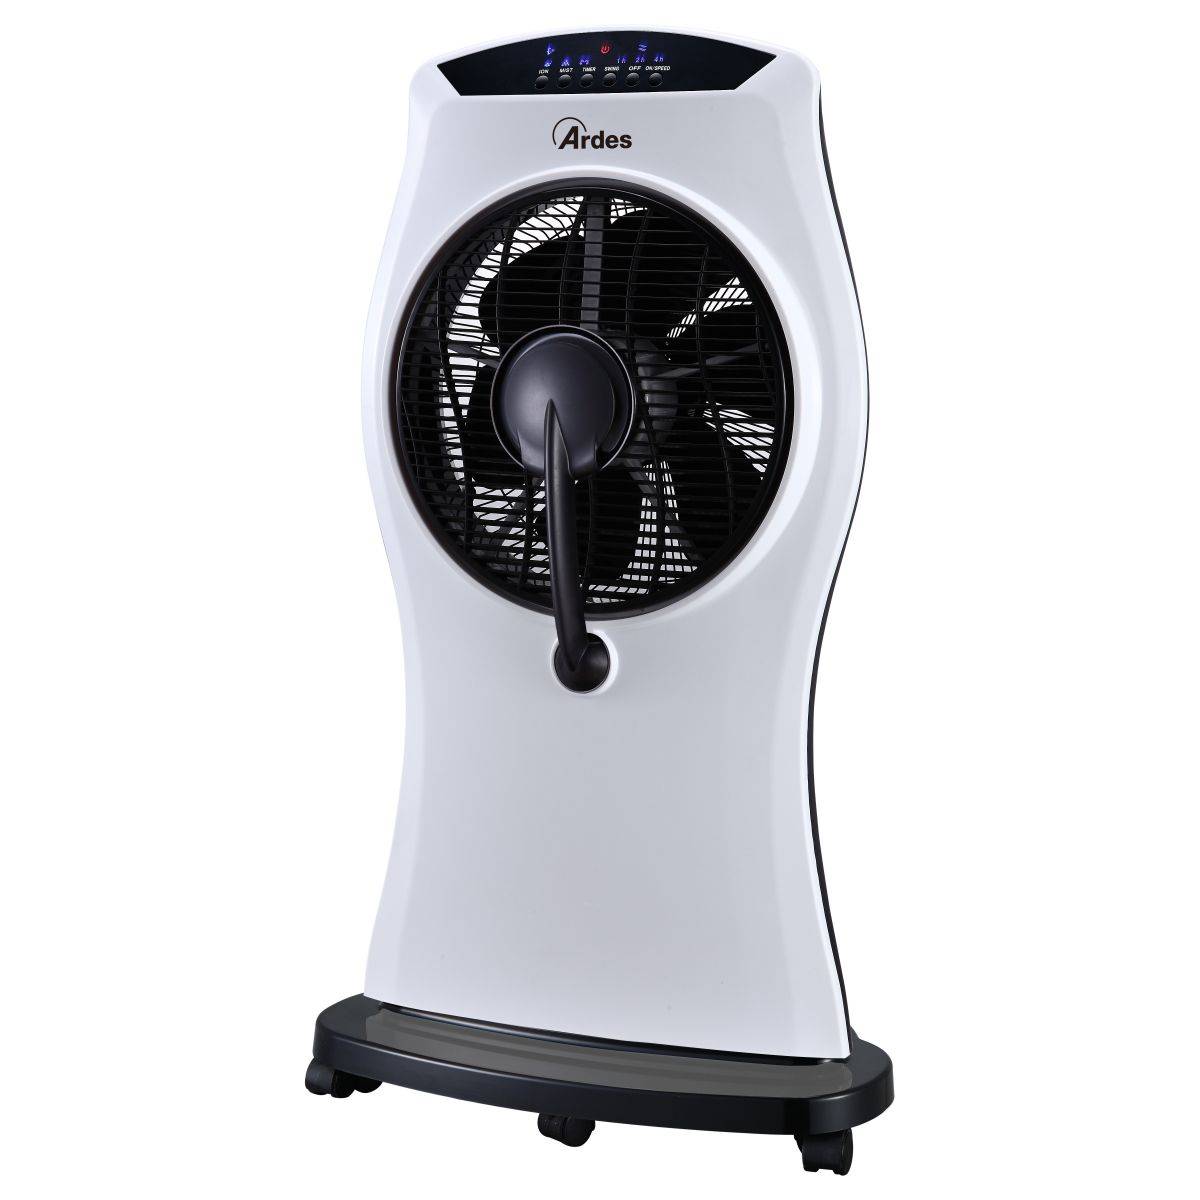 ARDES 5M50 Álló ventilátor beépített ultrahangos párásítóval - A készlet erejéig rendelhető! (MK)